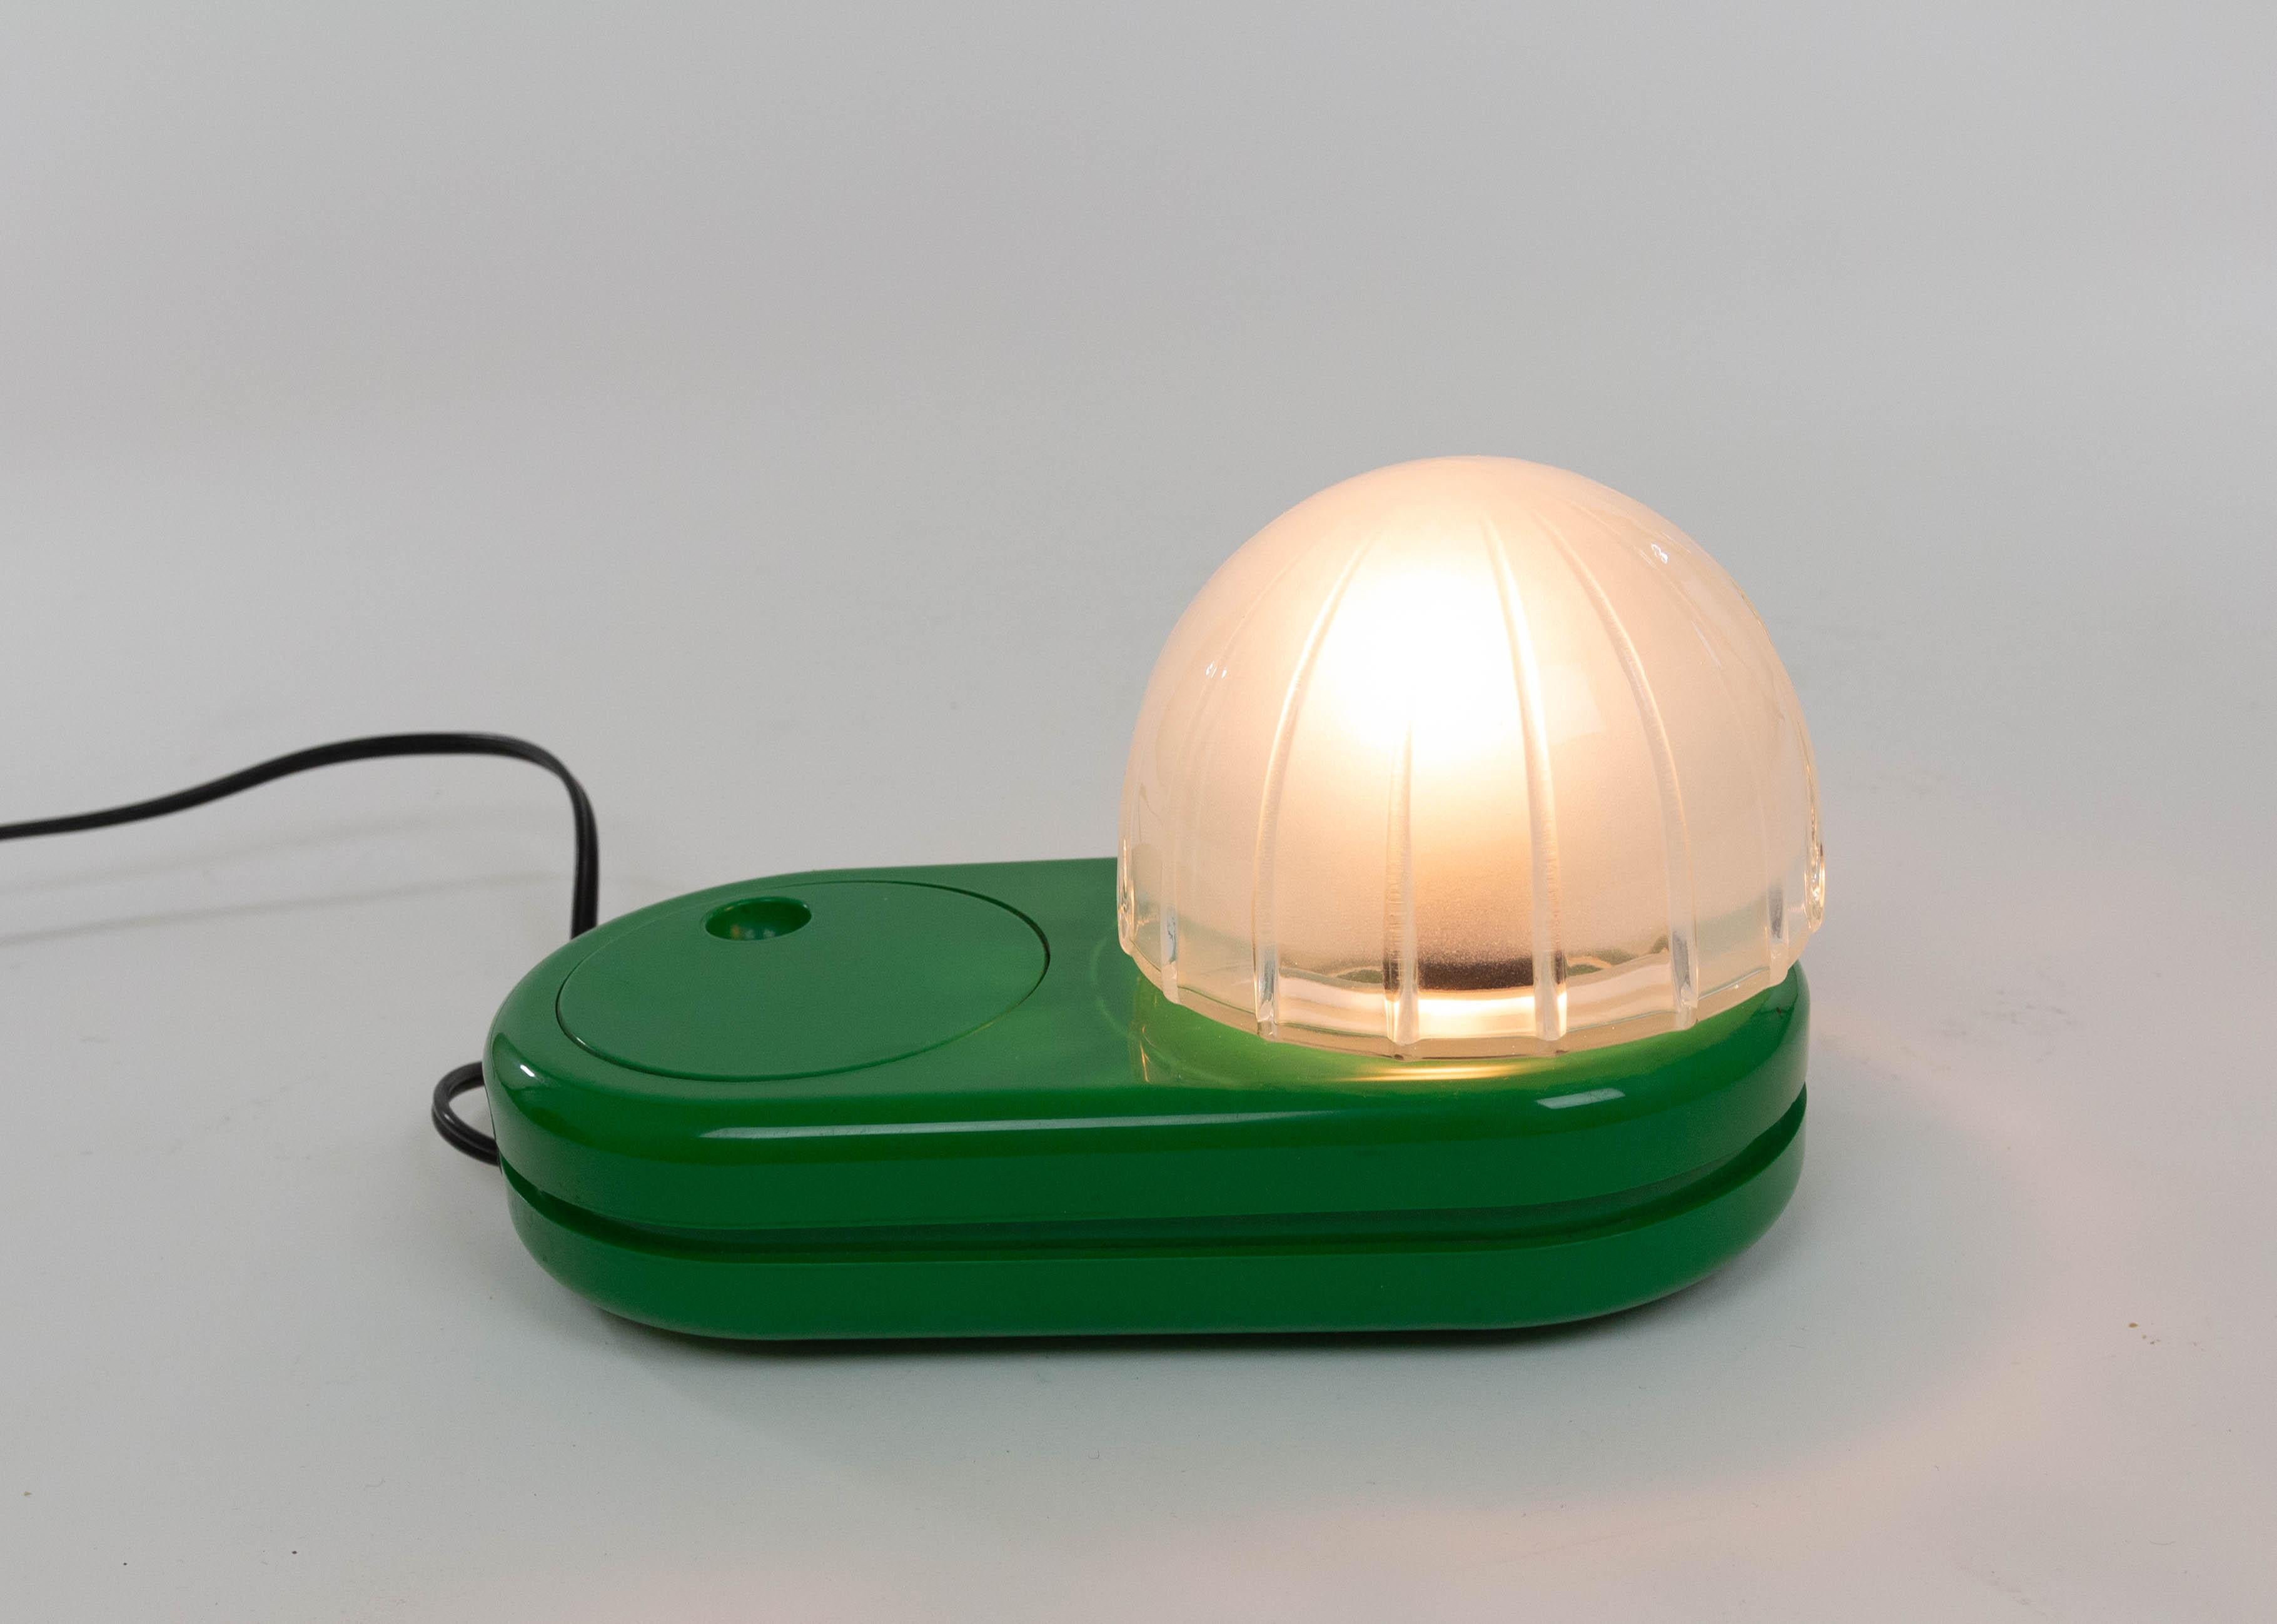 Grüne Tischleuchte Farstar, entworfen von Adalberto Dal Lago (1973) und hergestellt von Francesconi.

Der kuppelförmige Glasschirm sitzt auf einem Kunststoffsockel. Der große, runde Lichtdimmer, der auch als Ein- und Ausschalter fungiert, ist ein